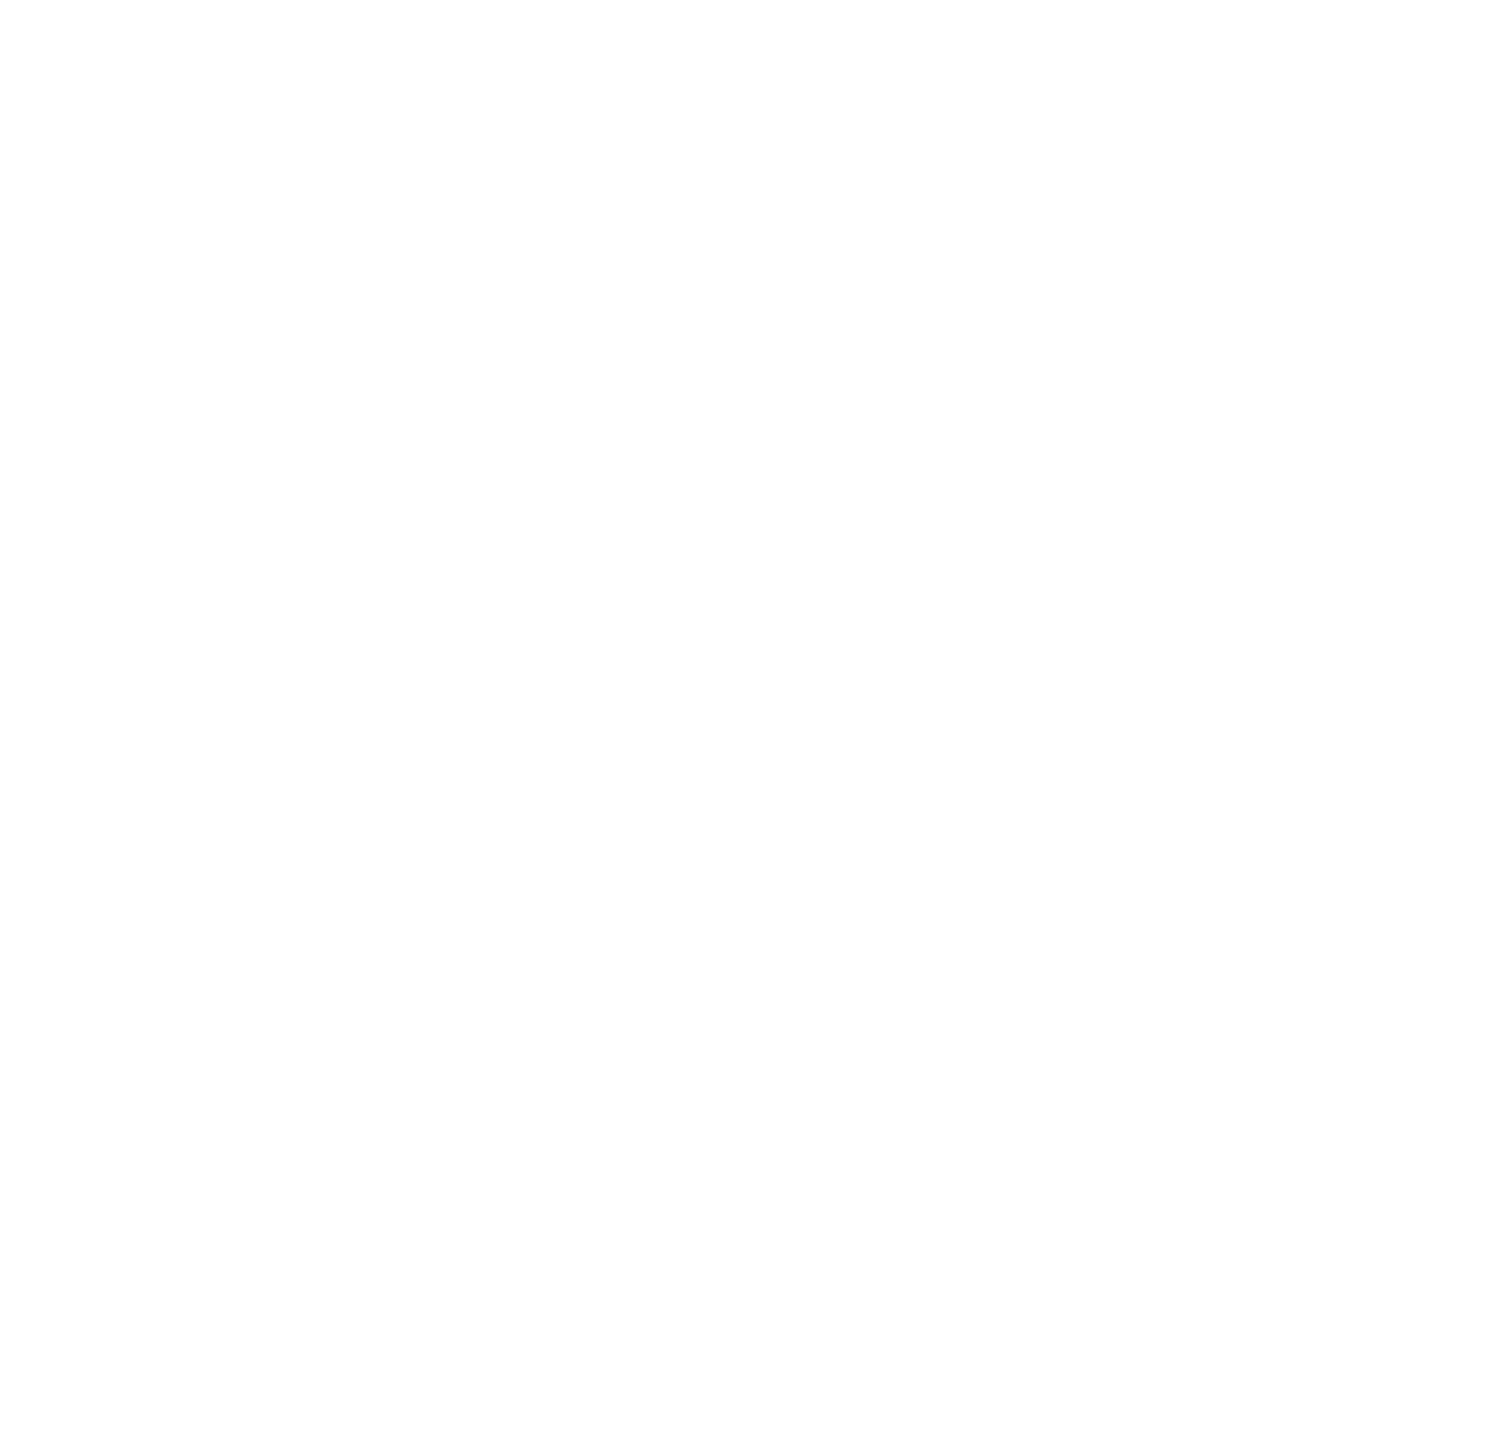 DINNER ROLL DANCE